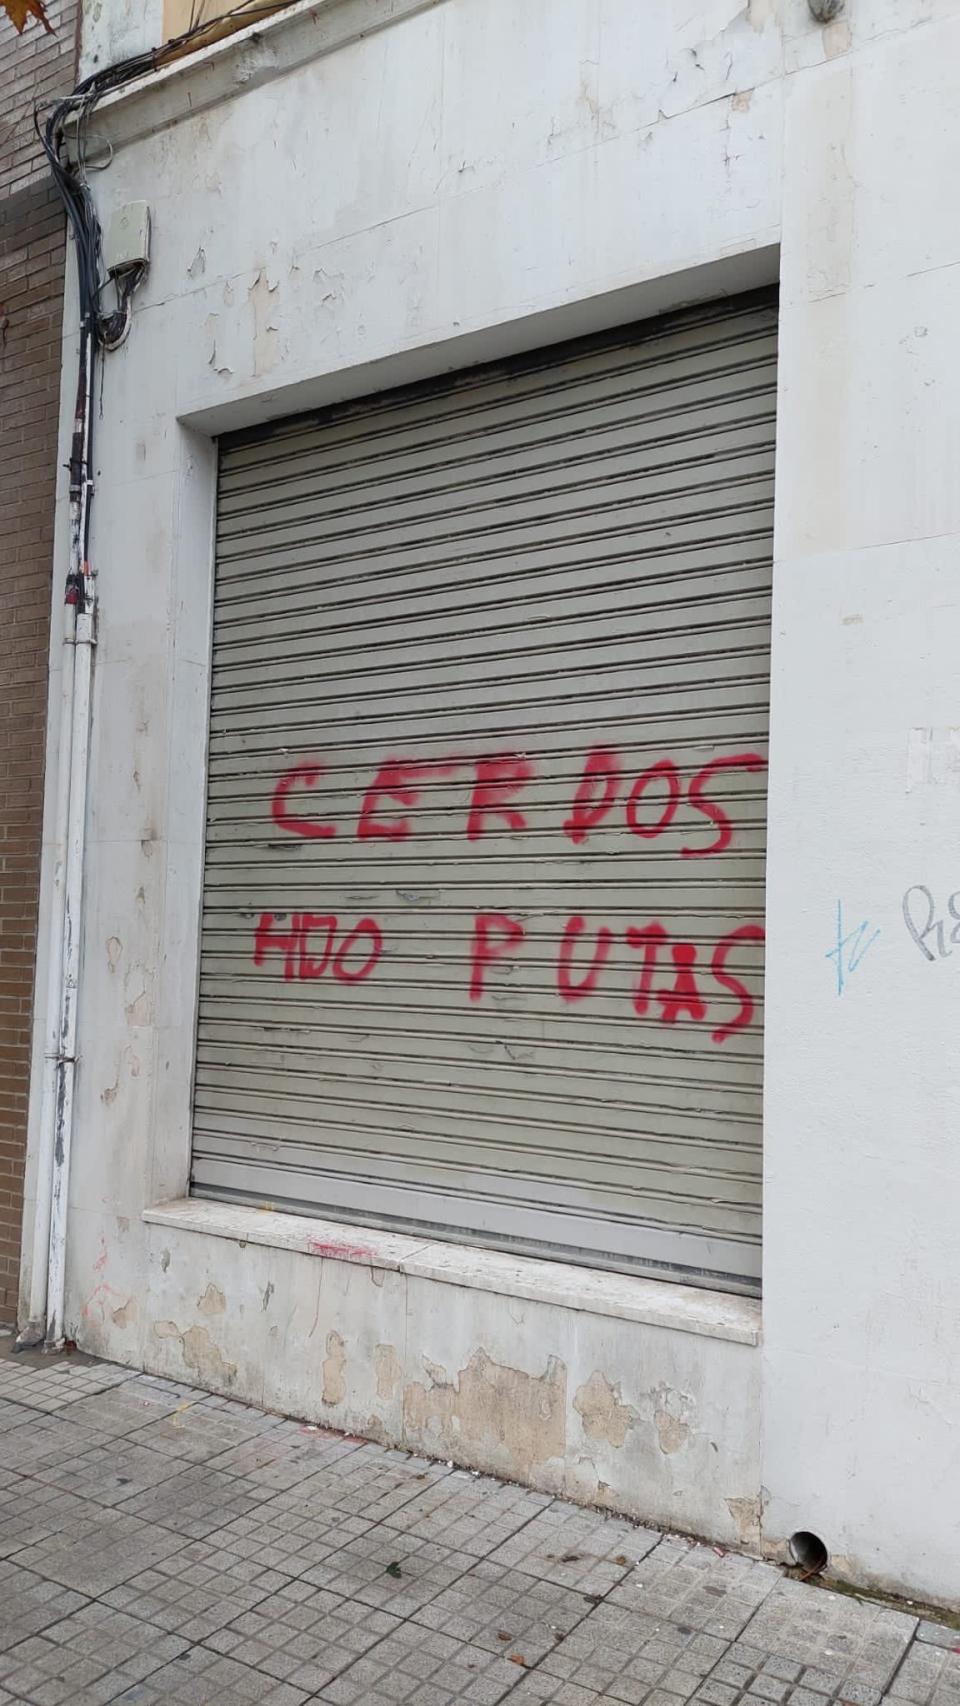 La sede del PSOE de Burgos aparece con pintadas e insultos